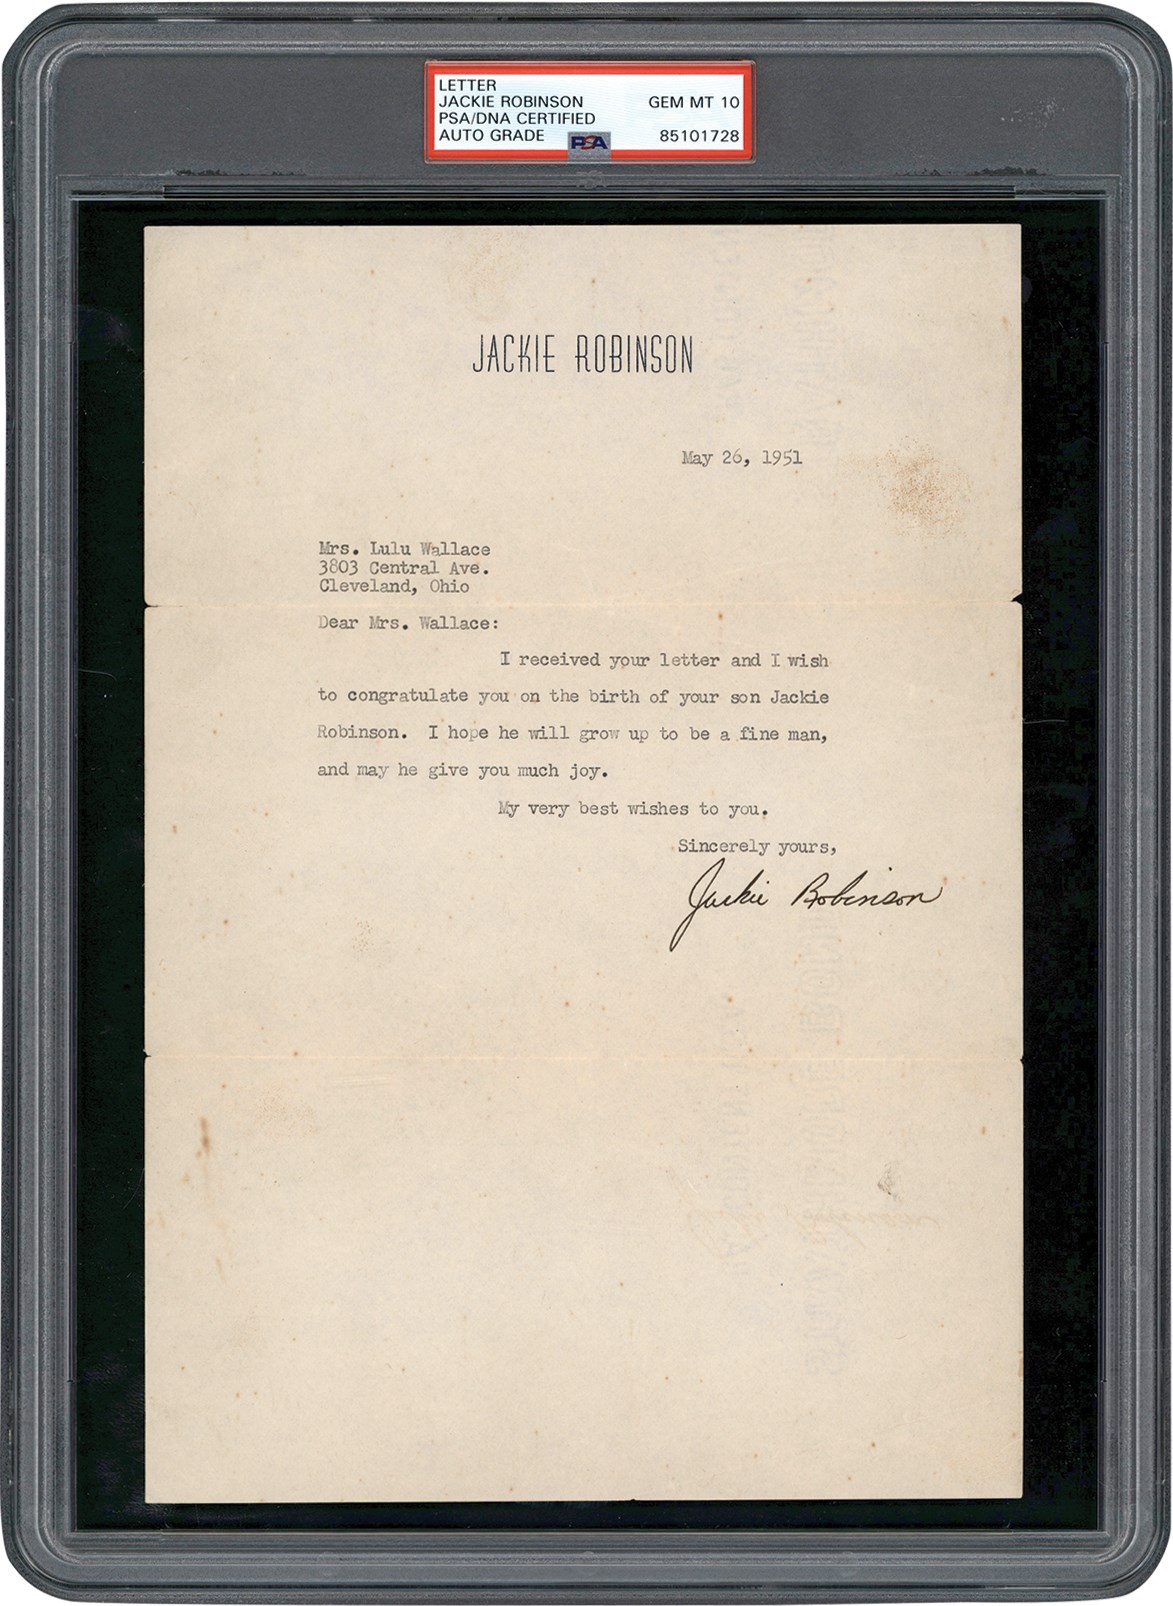 - 1951 Jackie Robinson Signed Letter (PSA GEM MINT 10)